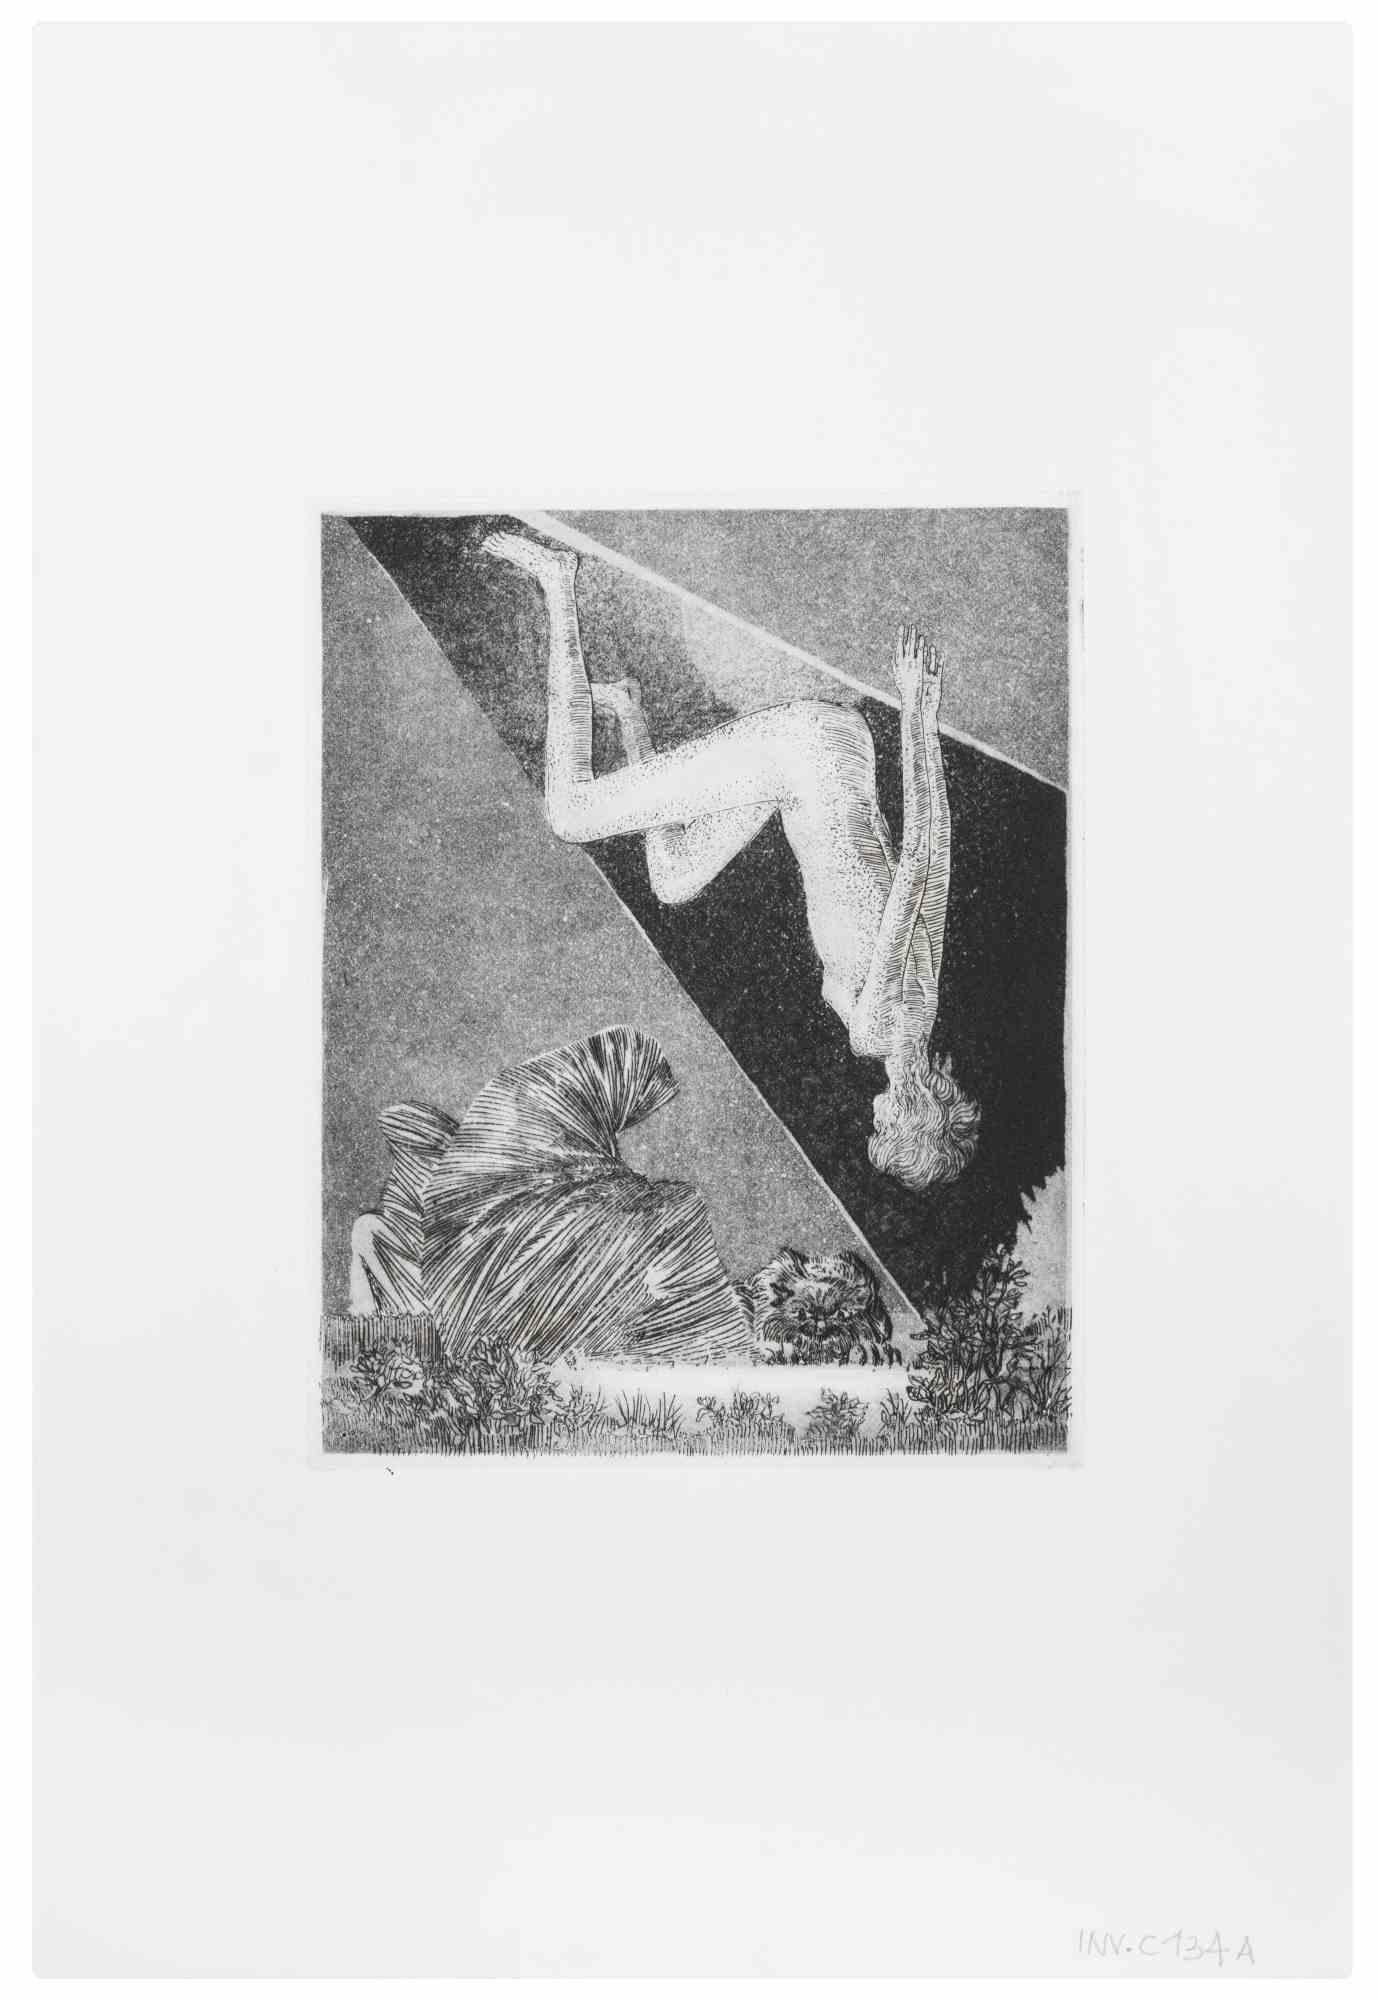 Die Vision ist ein Kunstwerk des zeitgenössischen italienischen Künstlers  Leo Guida (1992 - 2017) in den 1970er Jahren.

Original-Radierung in Schwarz-Weiß auf Papier.

Gute Bedingungen.

Leo Guida  (1992 - 2017). Mit seinem Gespür für aktuelle